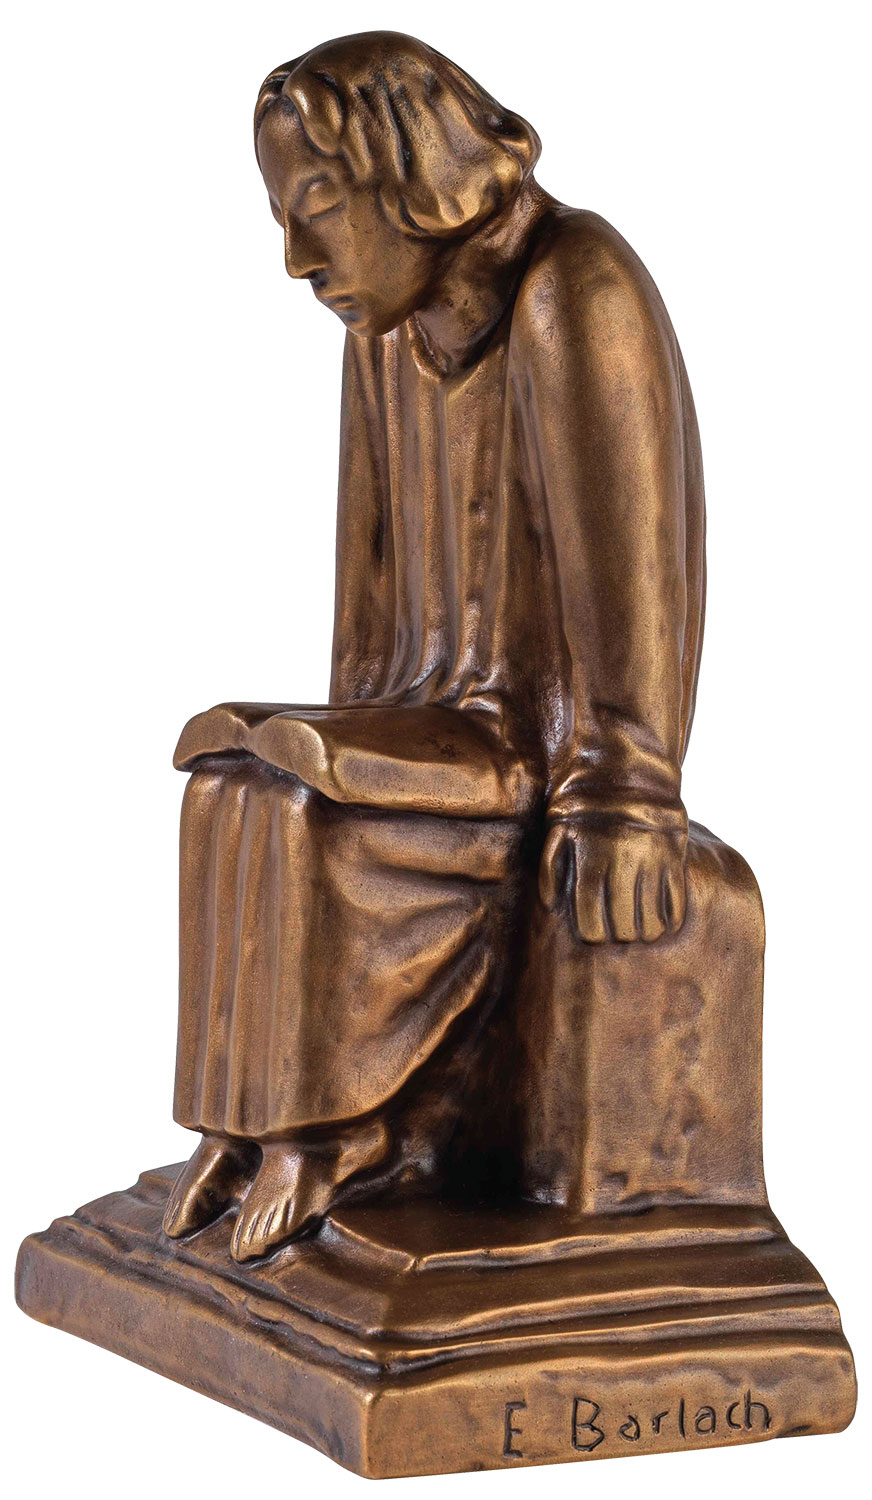 Skulptur "Lesender Klosterschüler" (1930), Reduktion in Bronze von Ernst Barlach